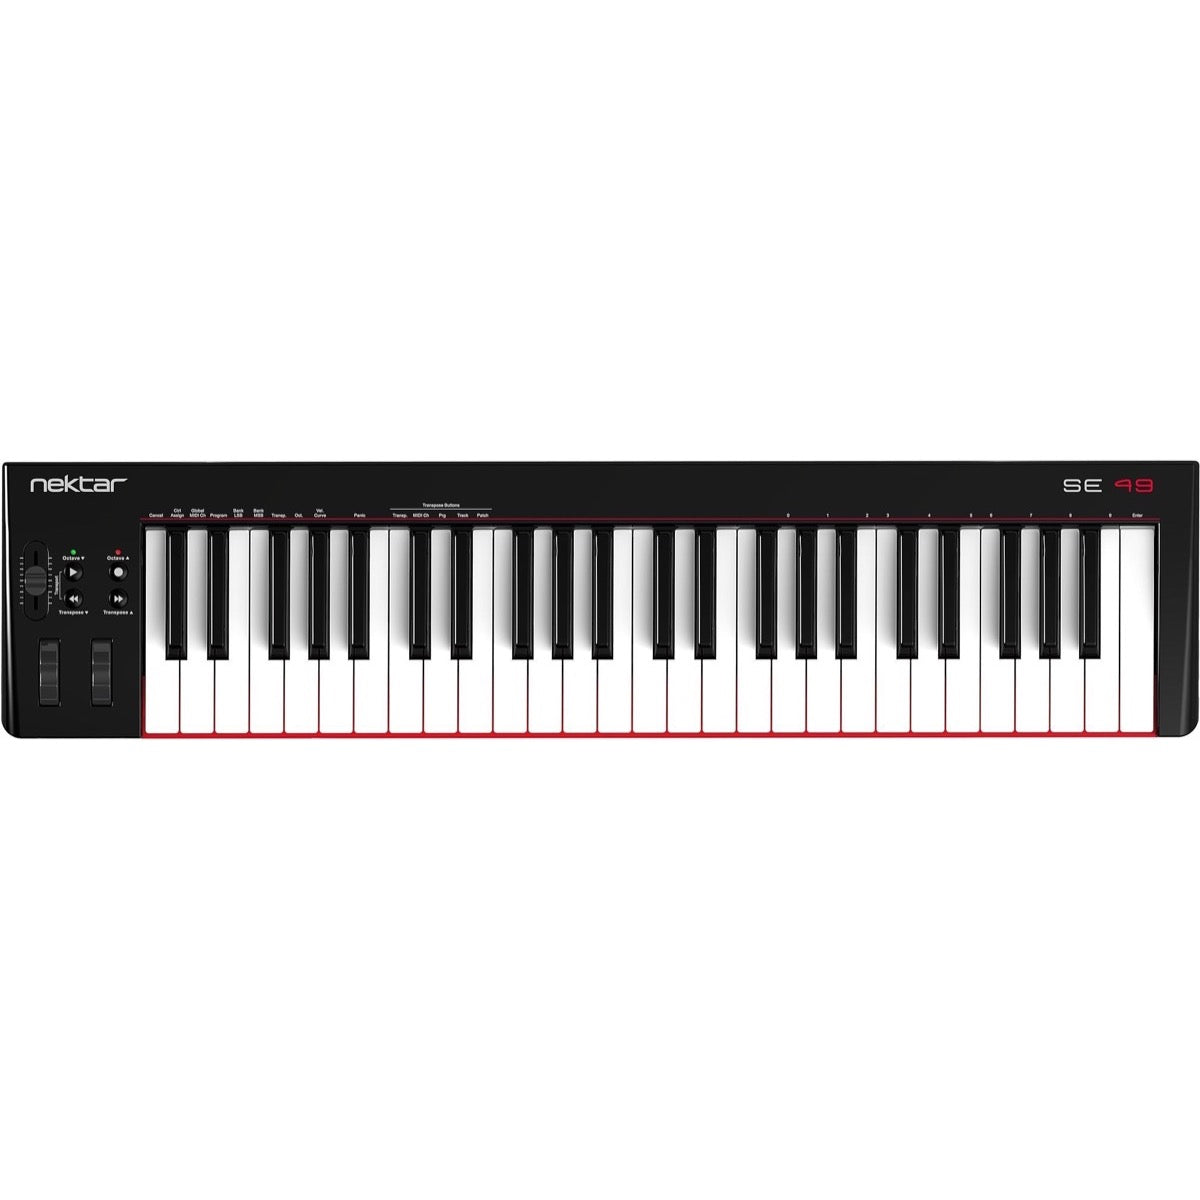 Nektar Se49 Usb Midi Controller Keyboard 49 Key Same Day Music